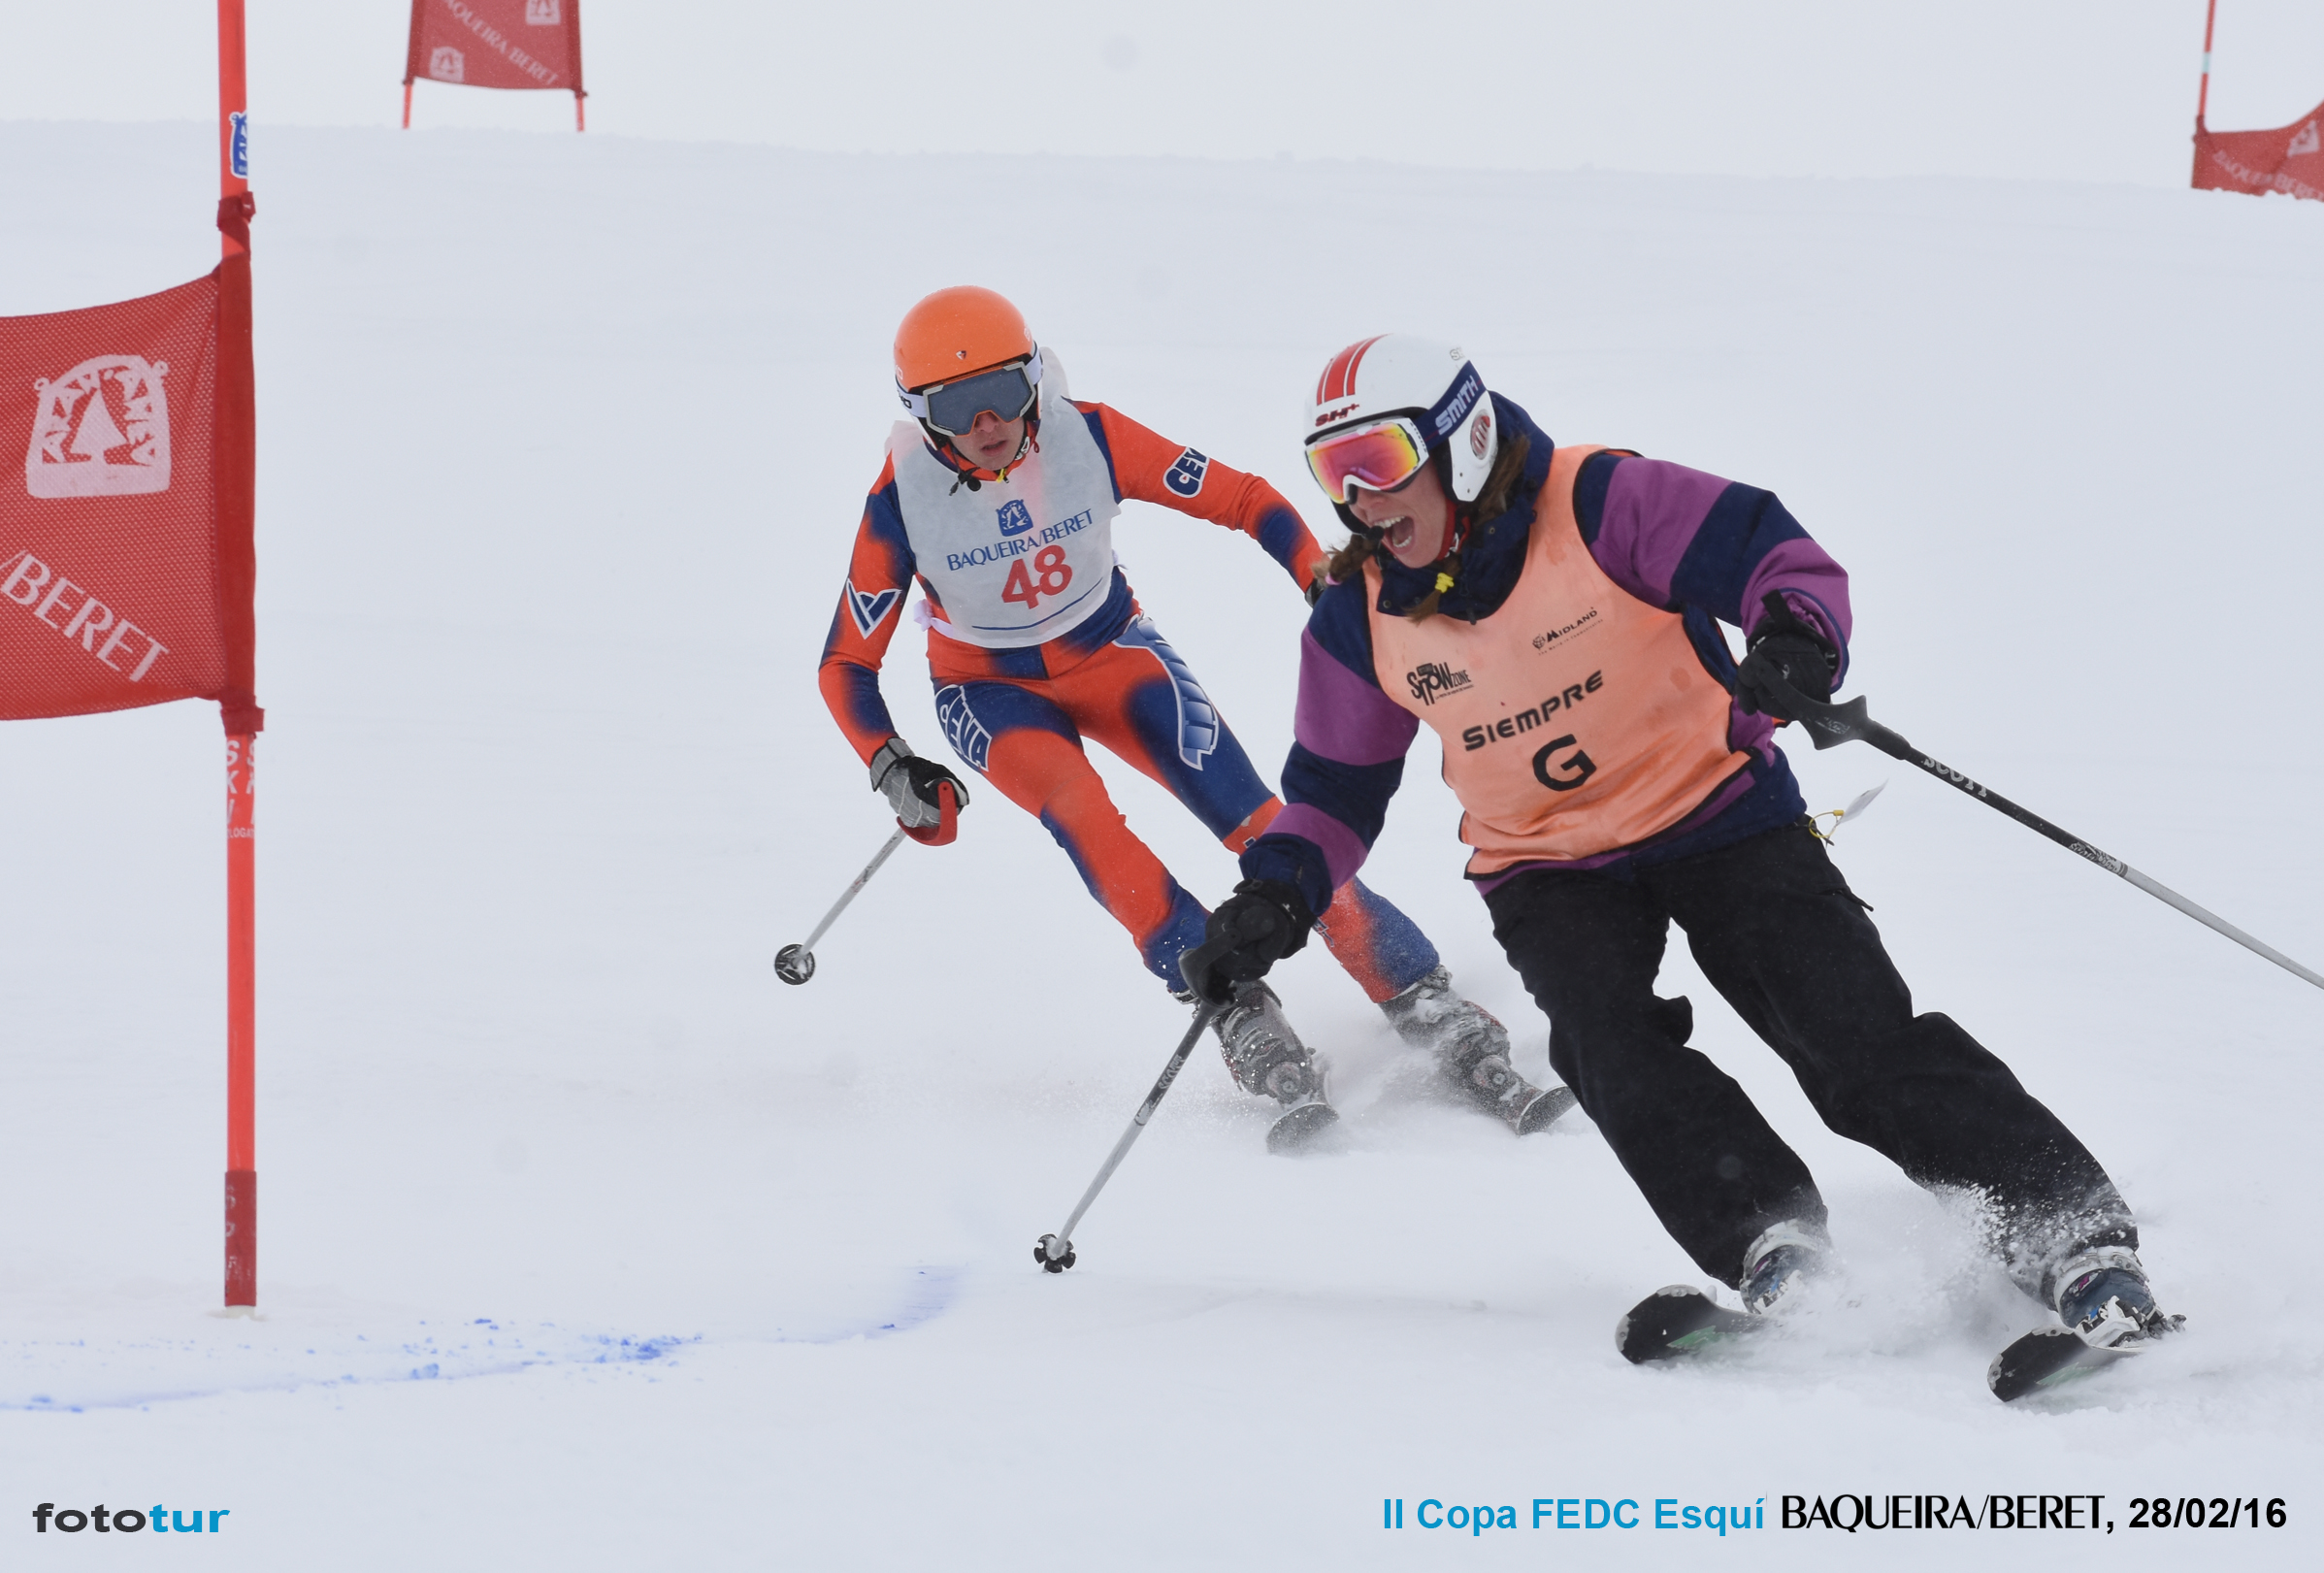 Esquiar con discapacidad visual